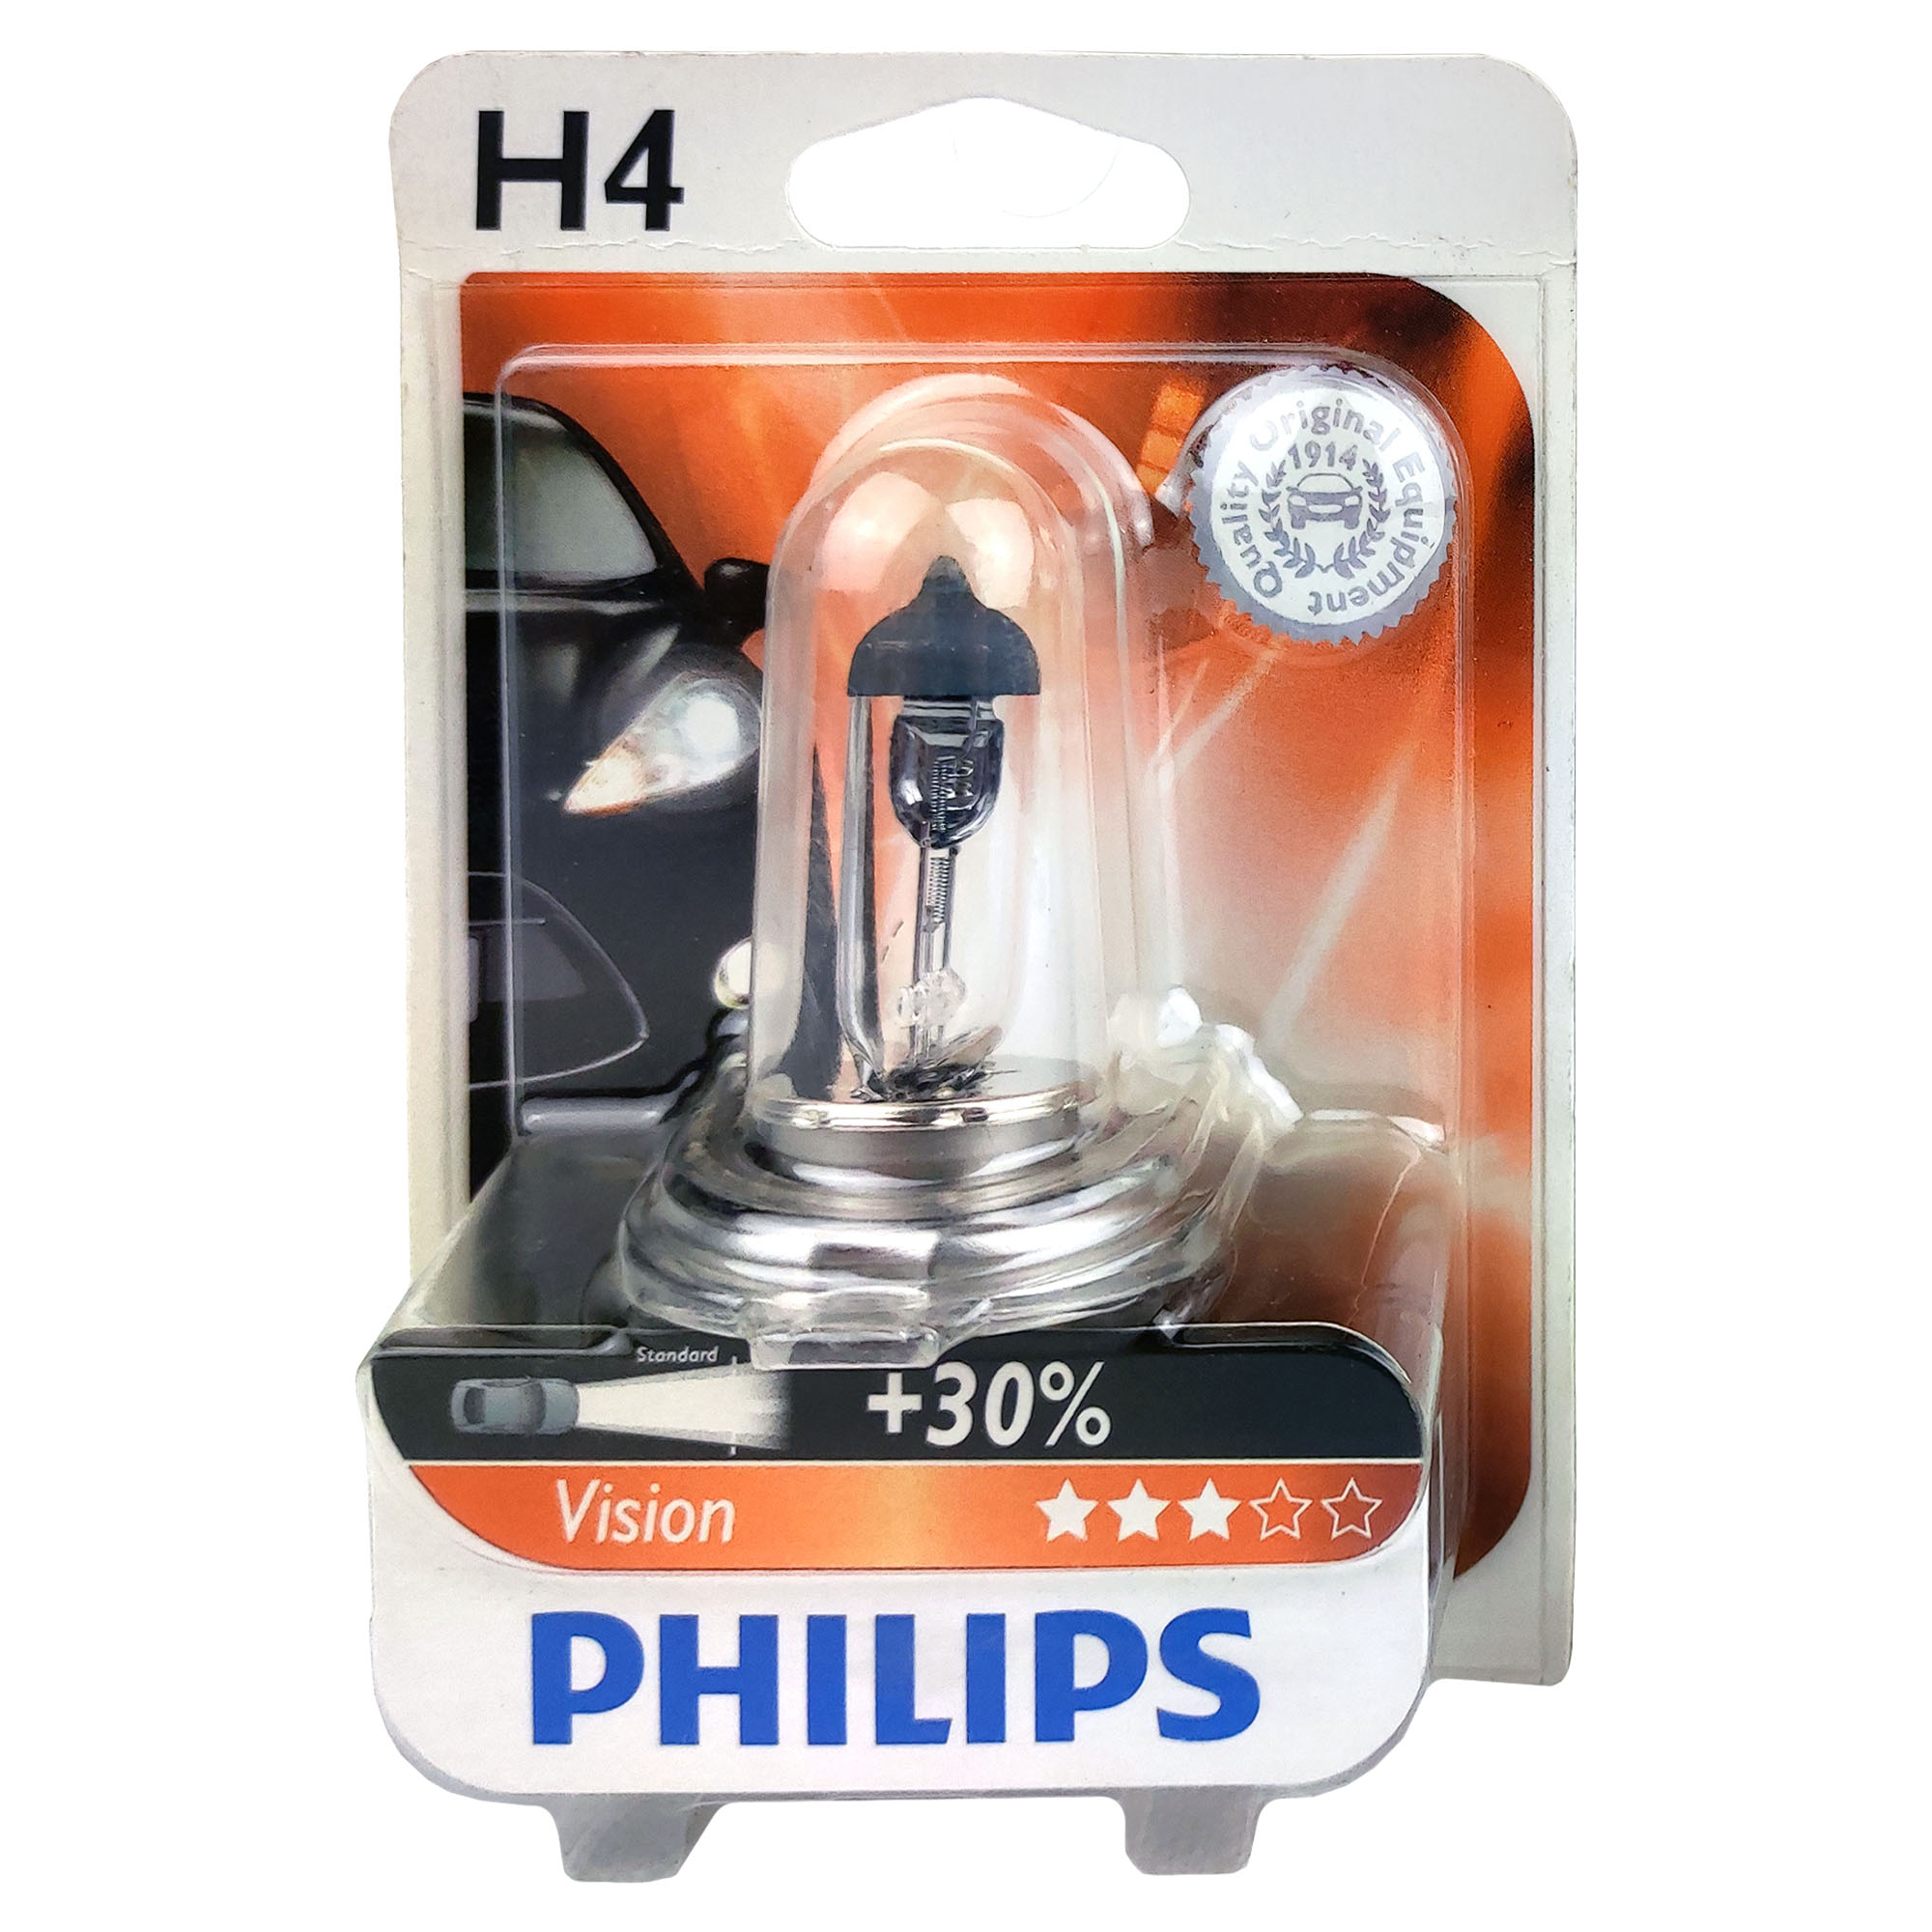 Philips vision купить. Лампы Филипс h4 +30. Philips +30 h27w1. Philips Polska.